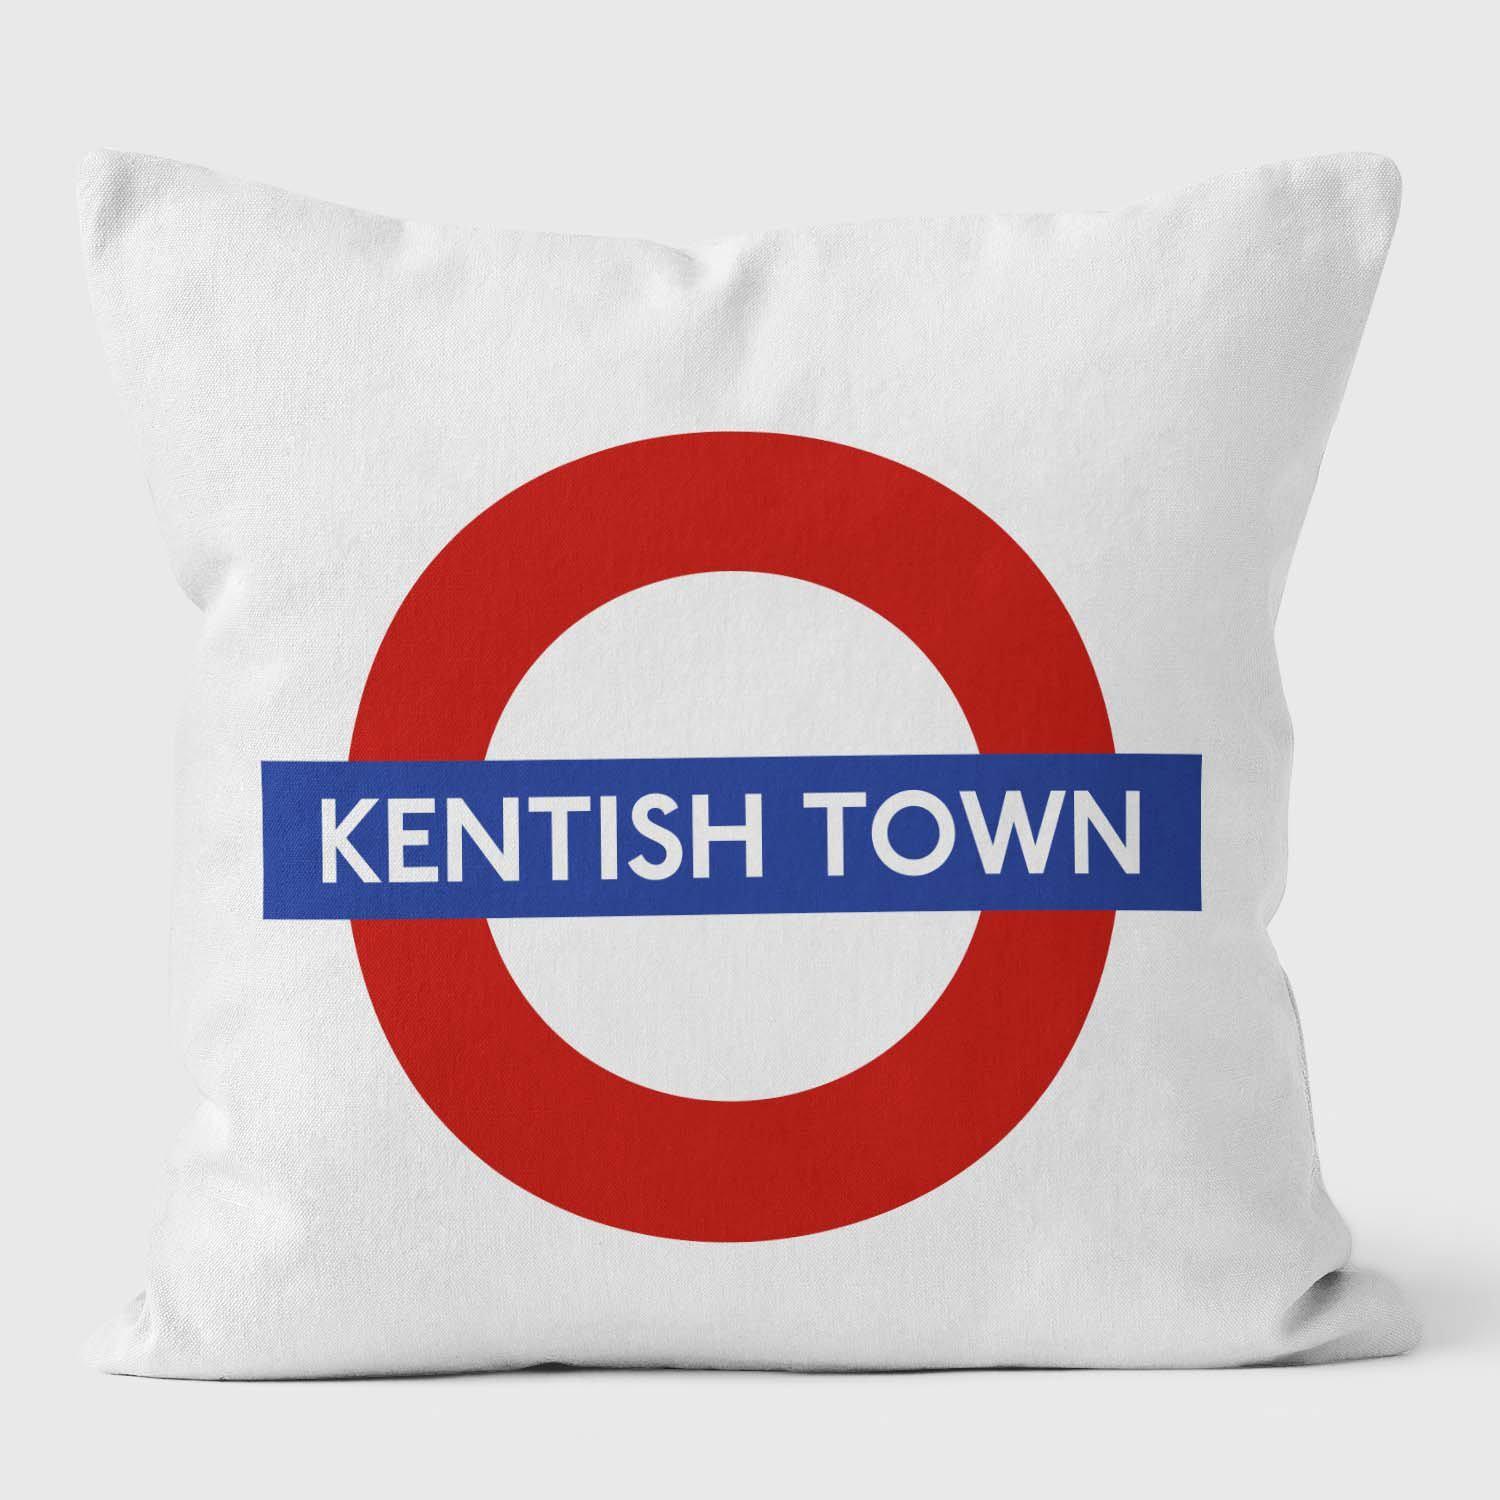 Kentish Town London Underground Tube Station Roundel Cushion - Handmade Cushions UK - WeLoveCushions